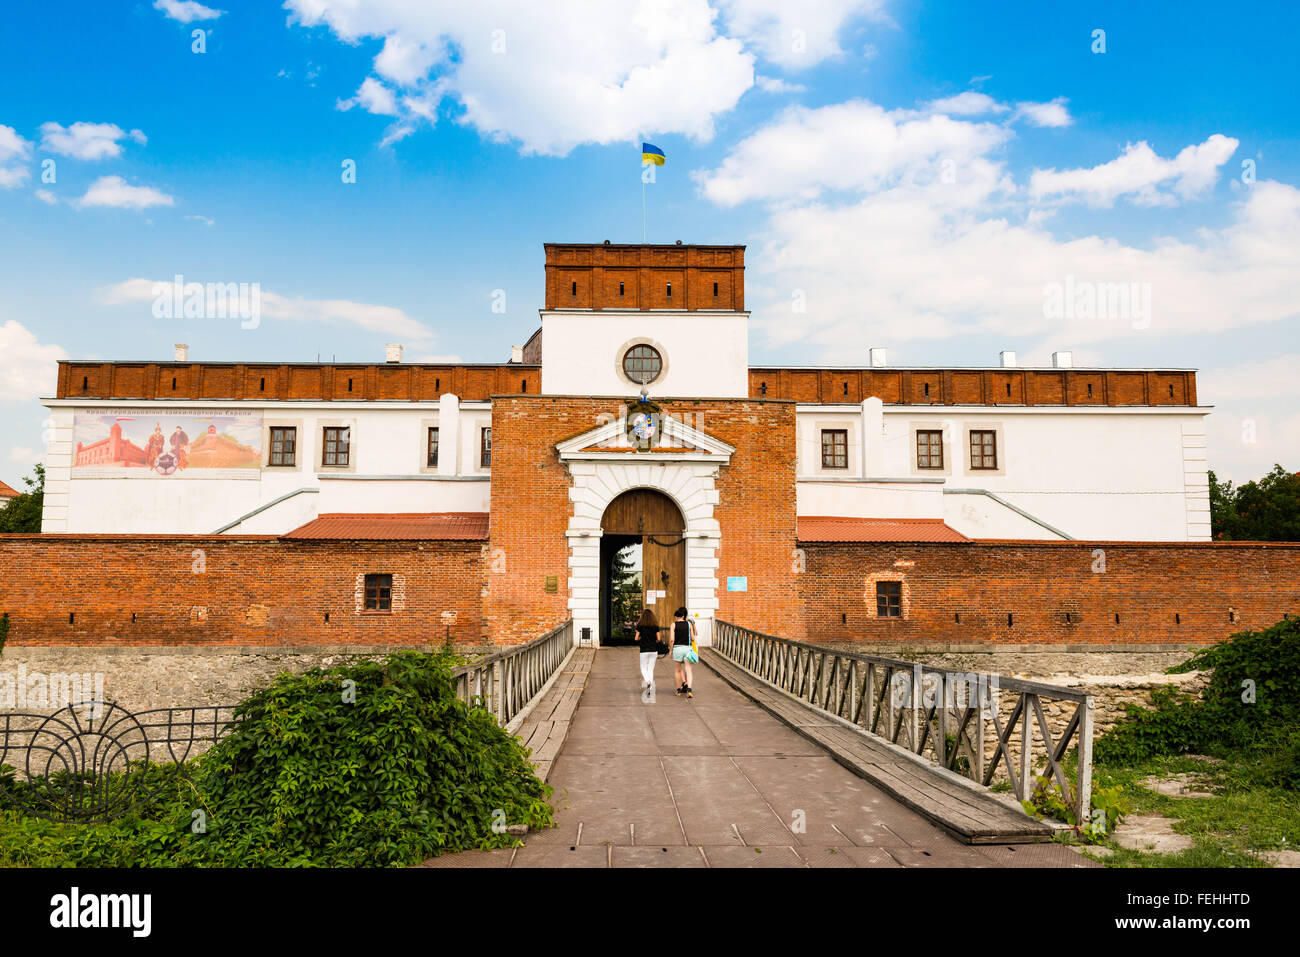 Doubno château fondé en 1492 par le prince Constantin Ostrogski sur un promontoire dominant la rivière Ikva, région de Rovno, Ukraine Banque D'Images